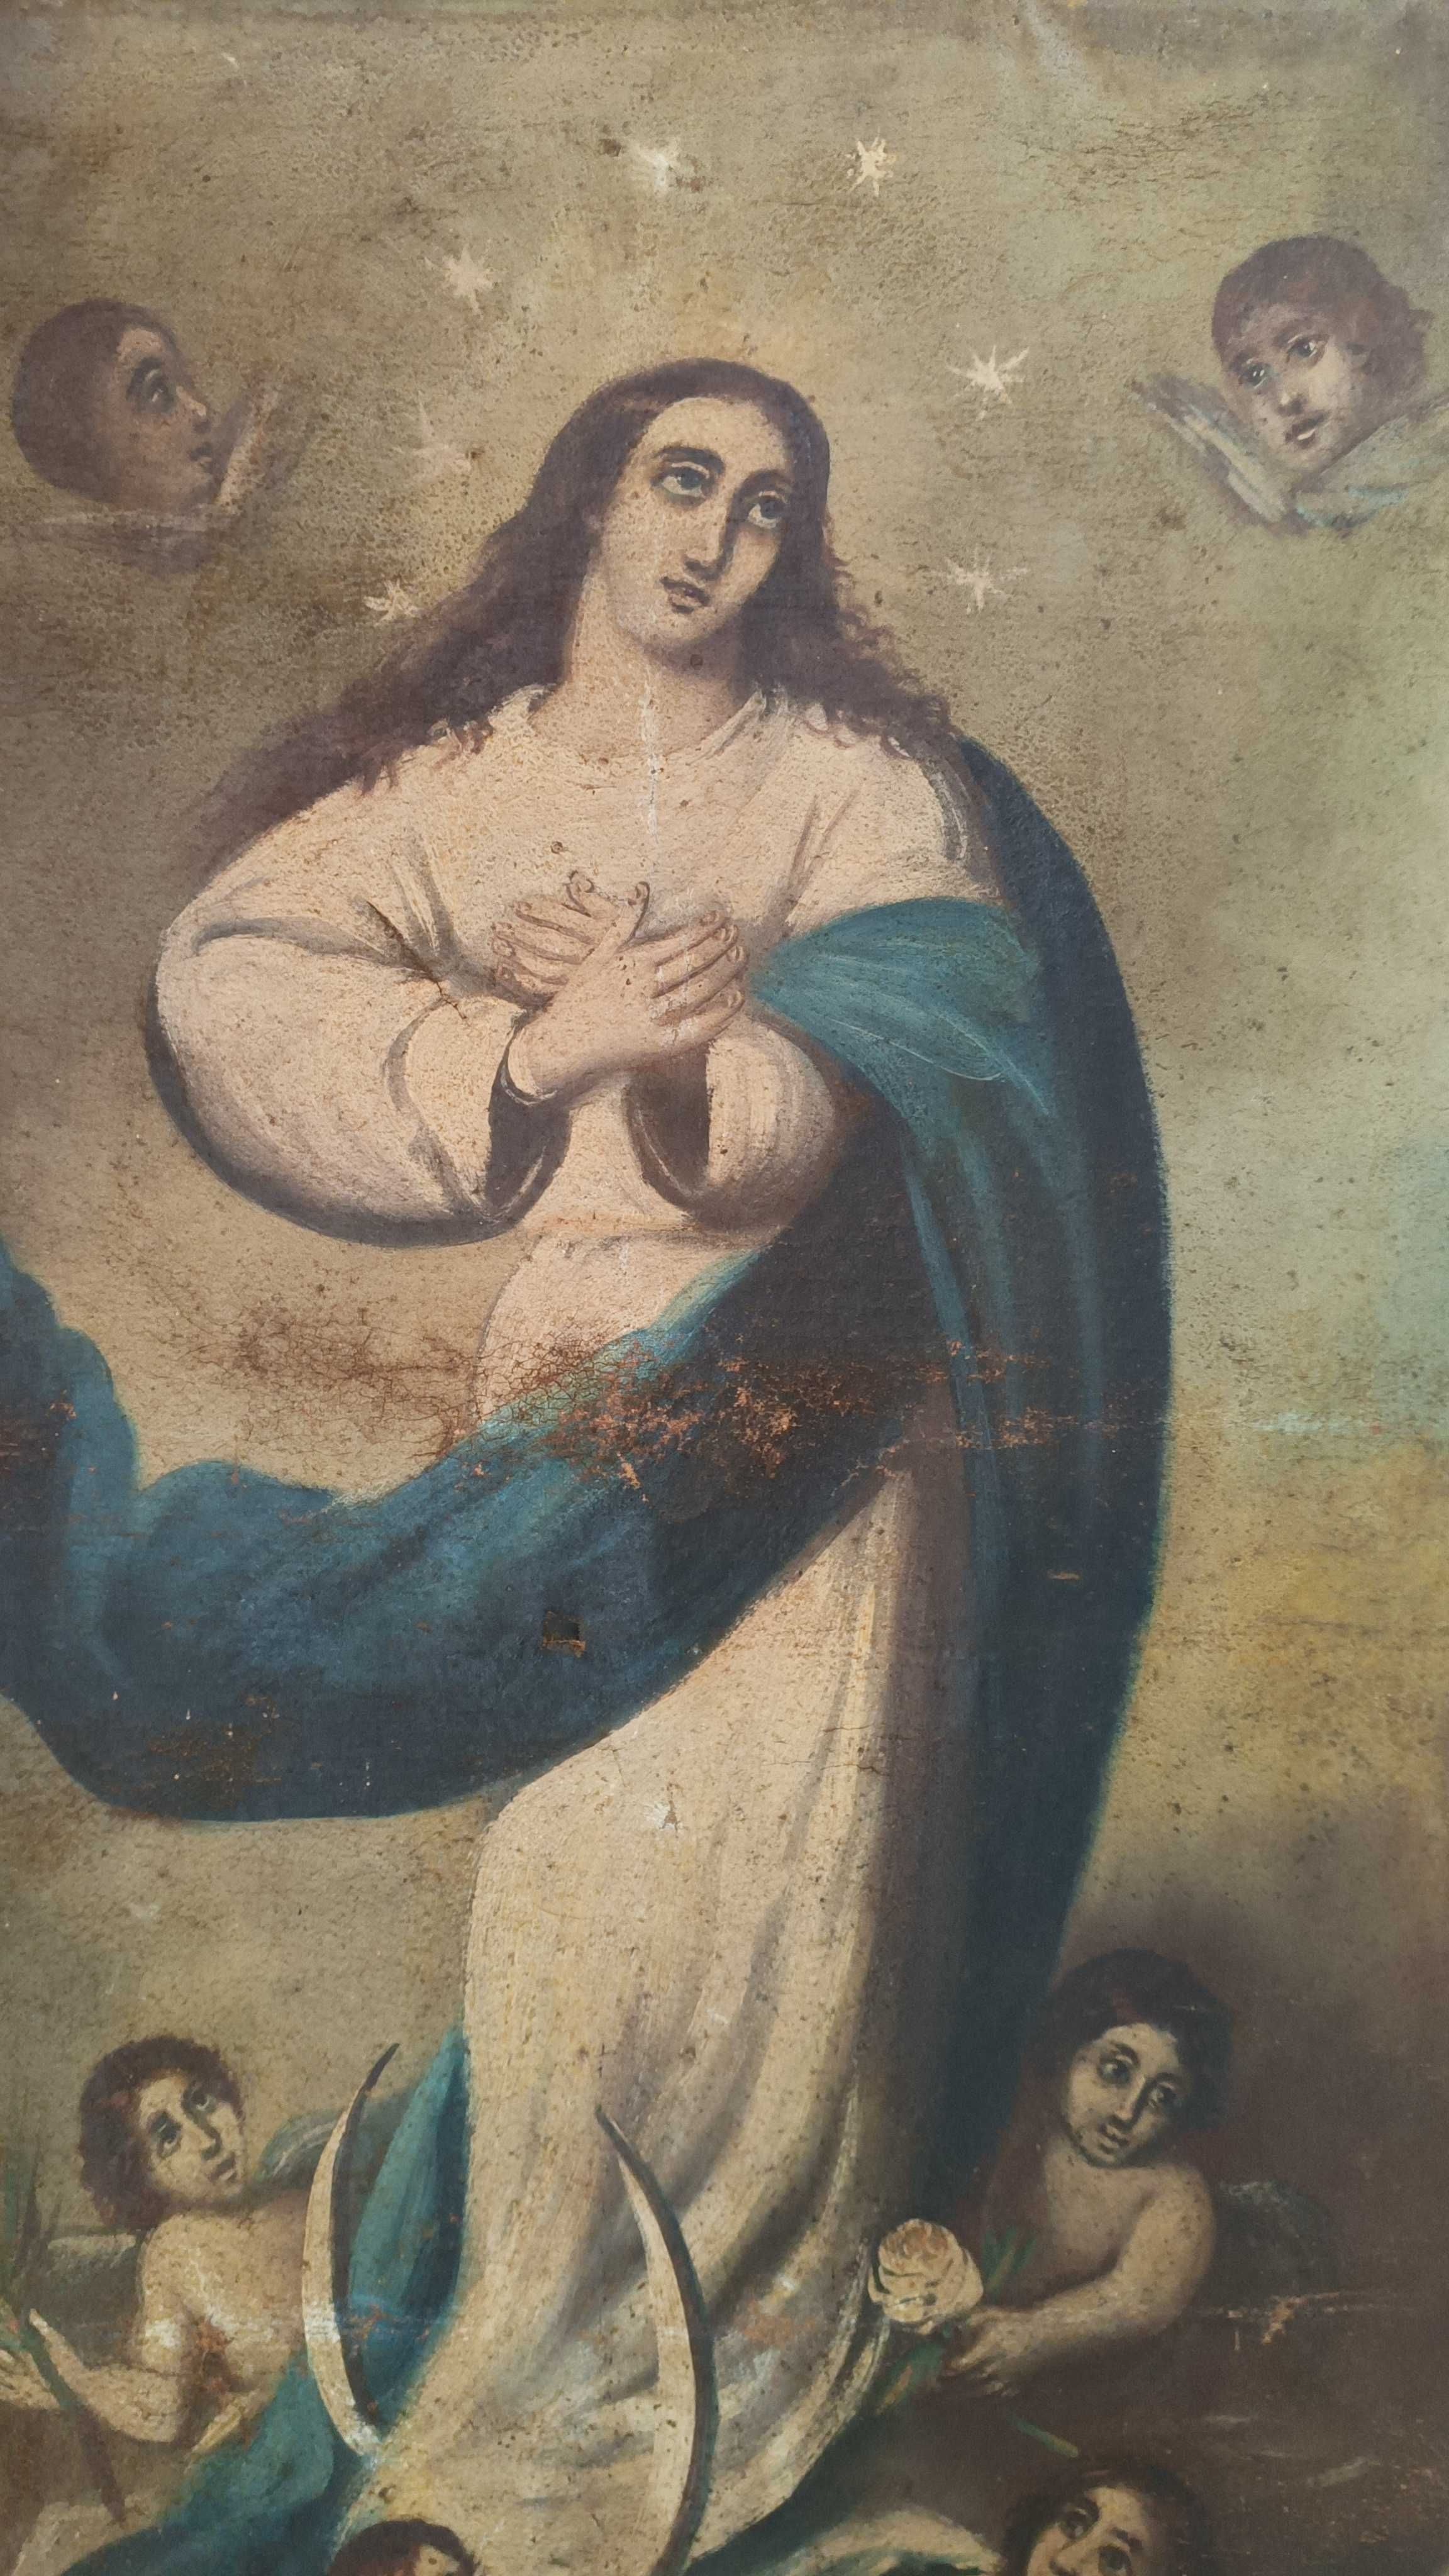 Pintura óleo sobre tela, séc. XVIII - XIX, Nossa Senhora da Conceição